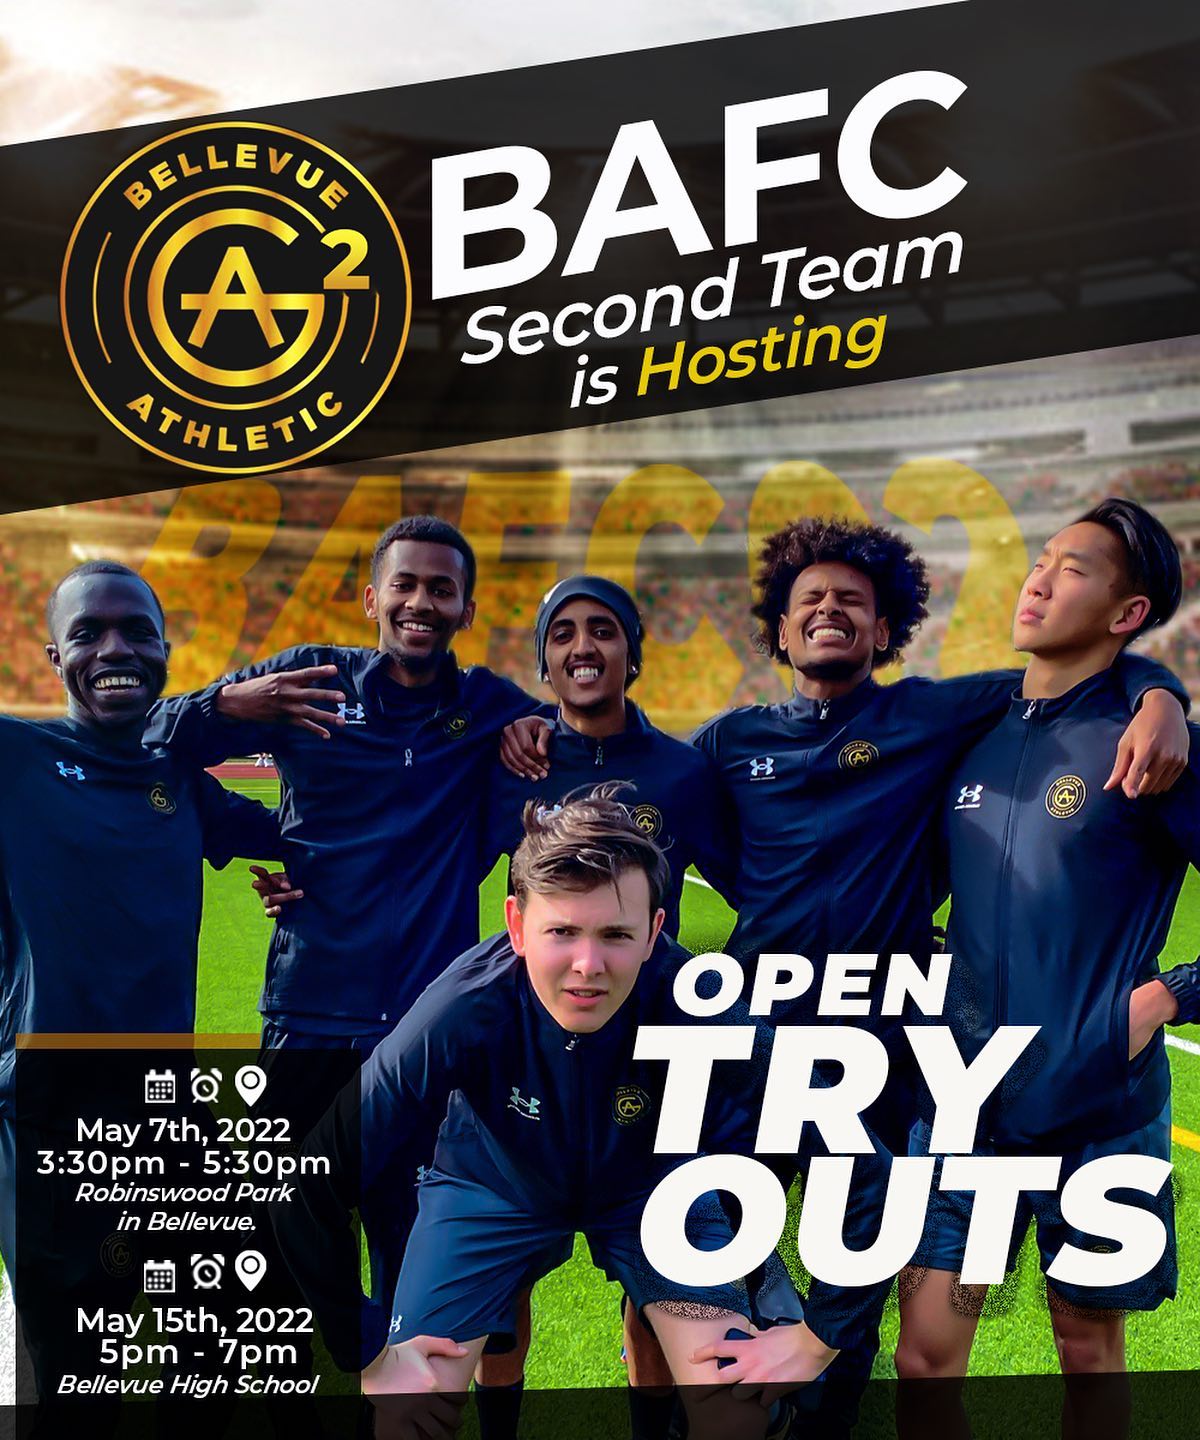 BAFC2 open tryouts